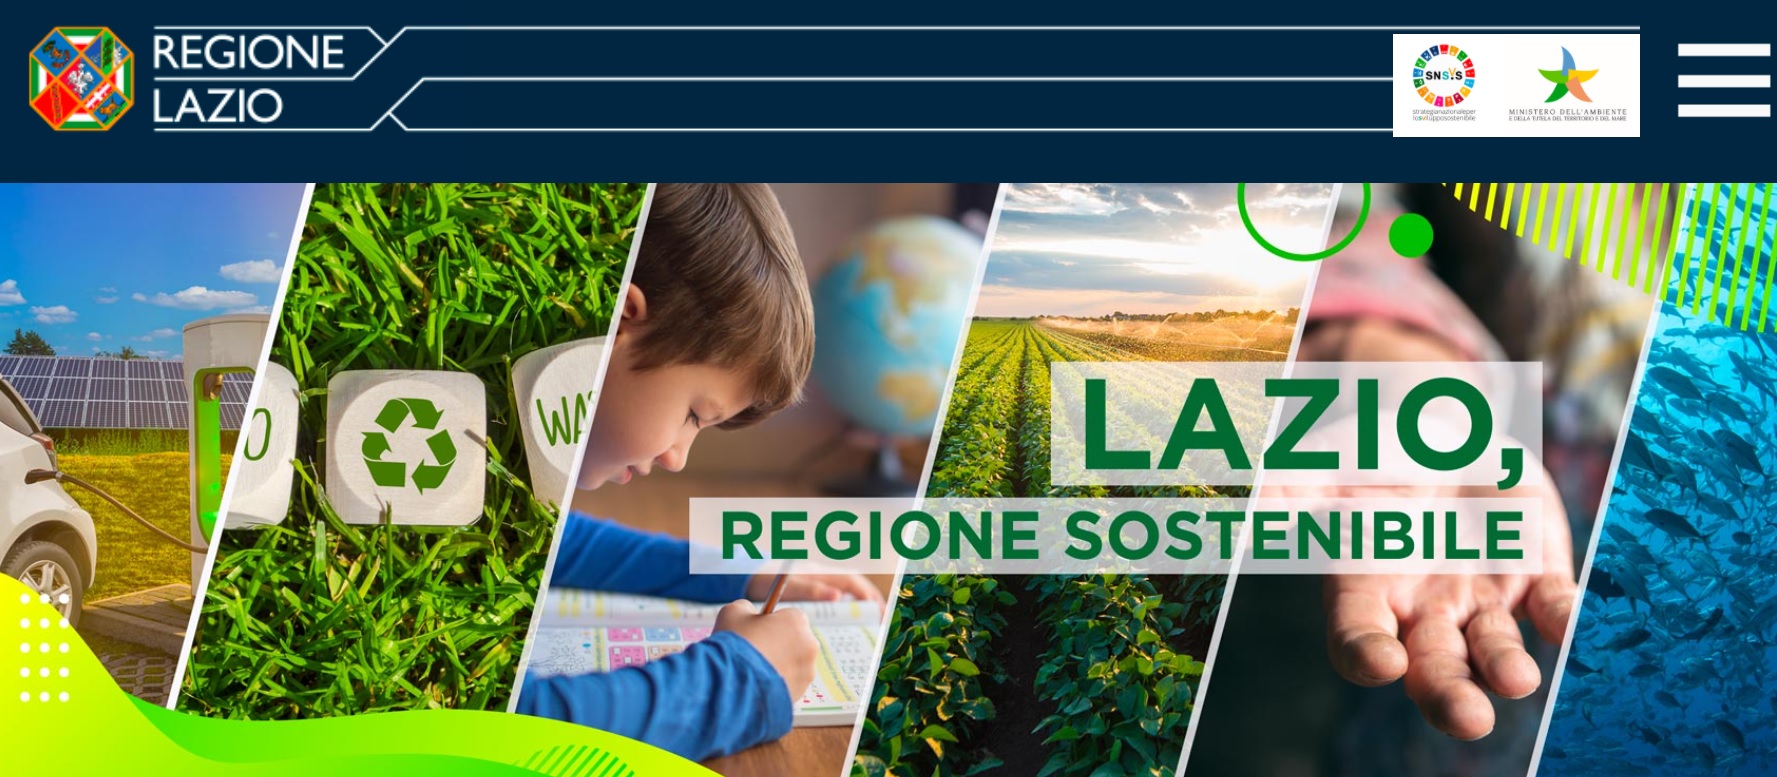 Stratégie régionale de développement durable (SRSvS) du Latium